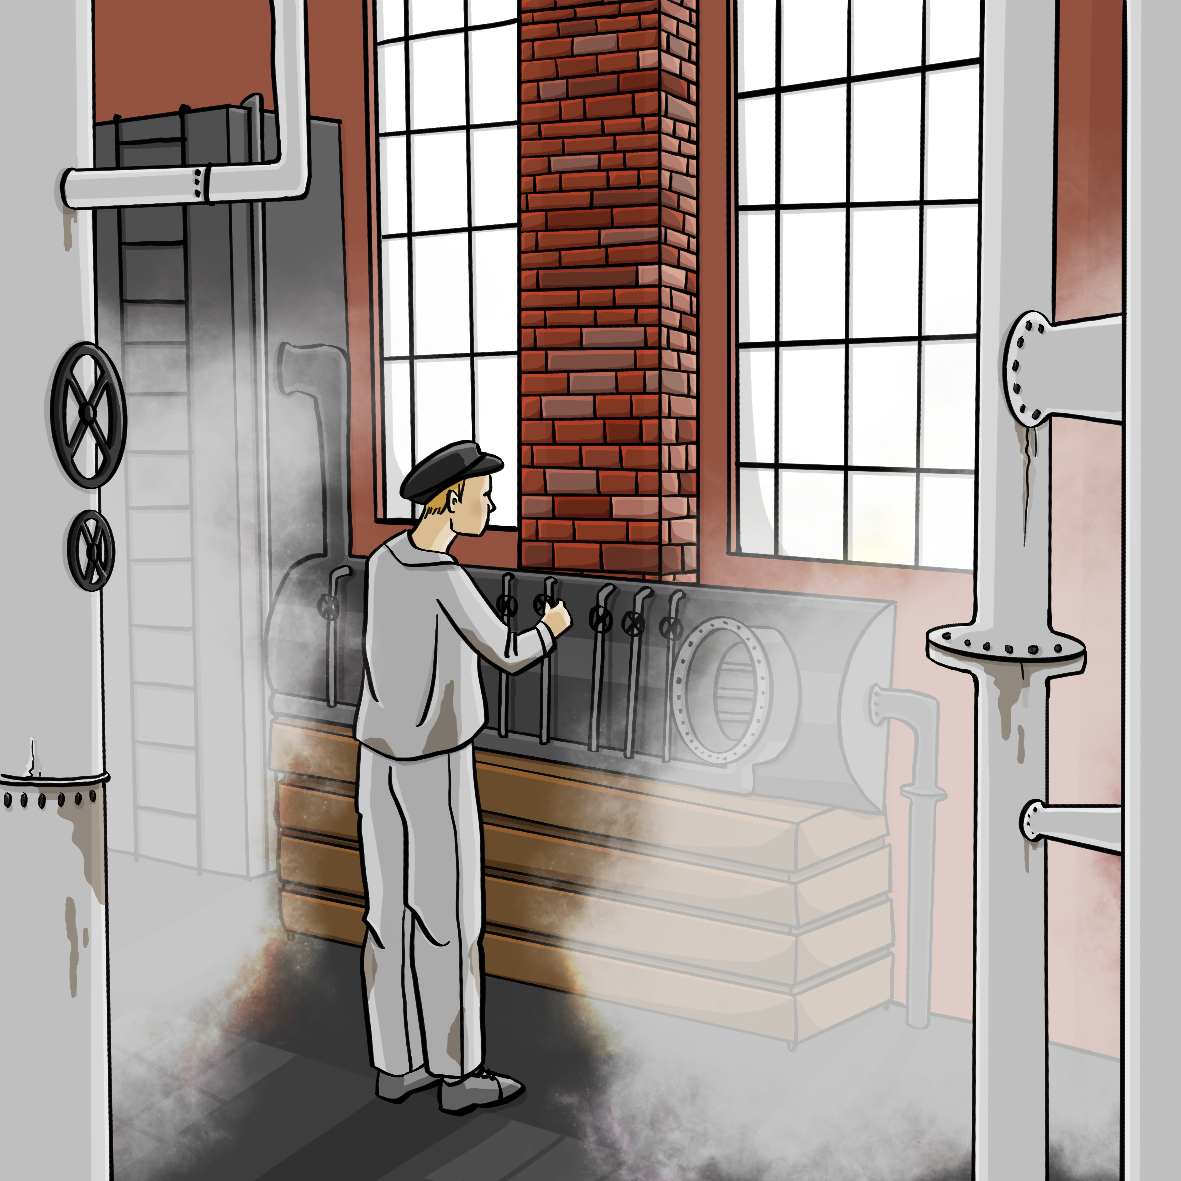 Ein Mann in Arbeitskleidung steht in einer Halle mit hohen Fenstern, Backsteinmauern und vielen Rohren und Ventilen. 